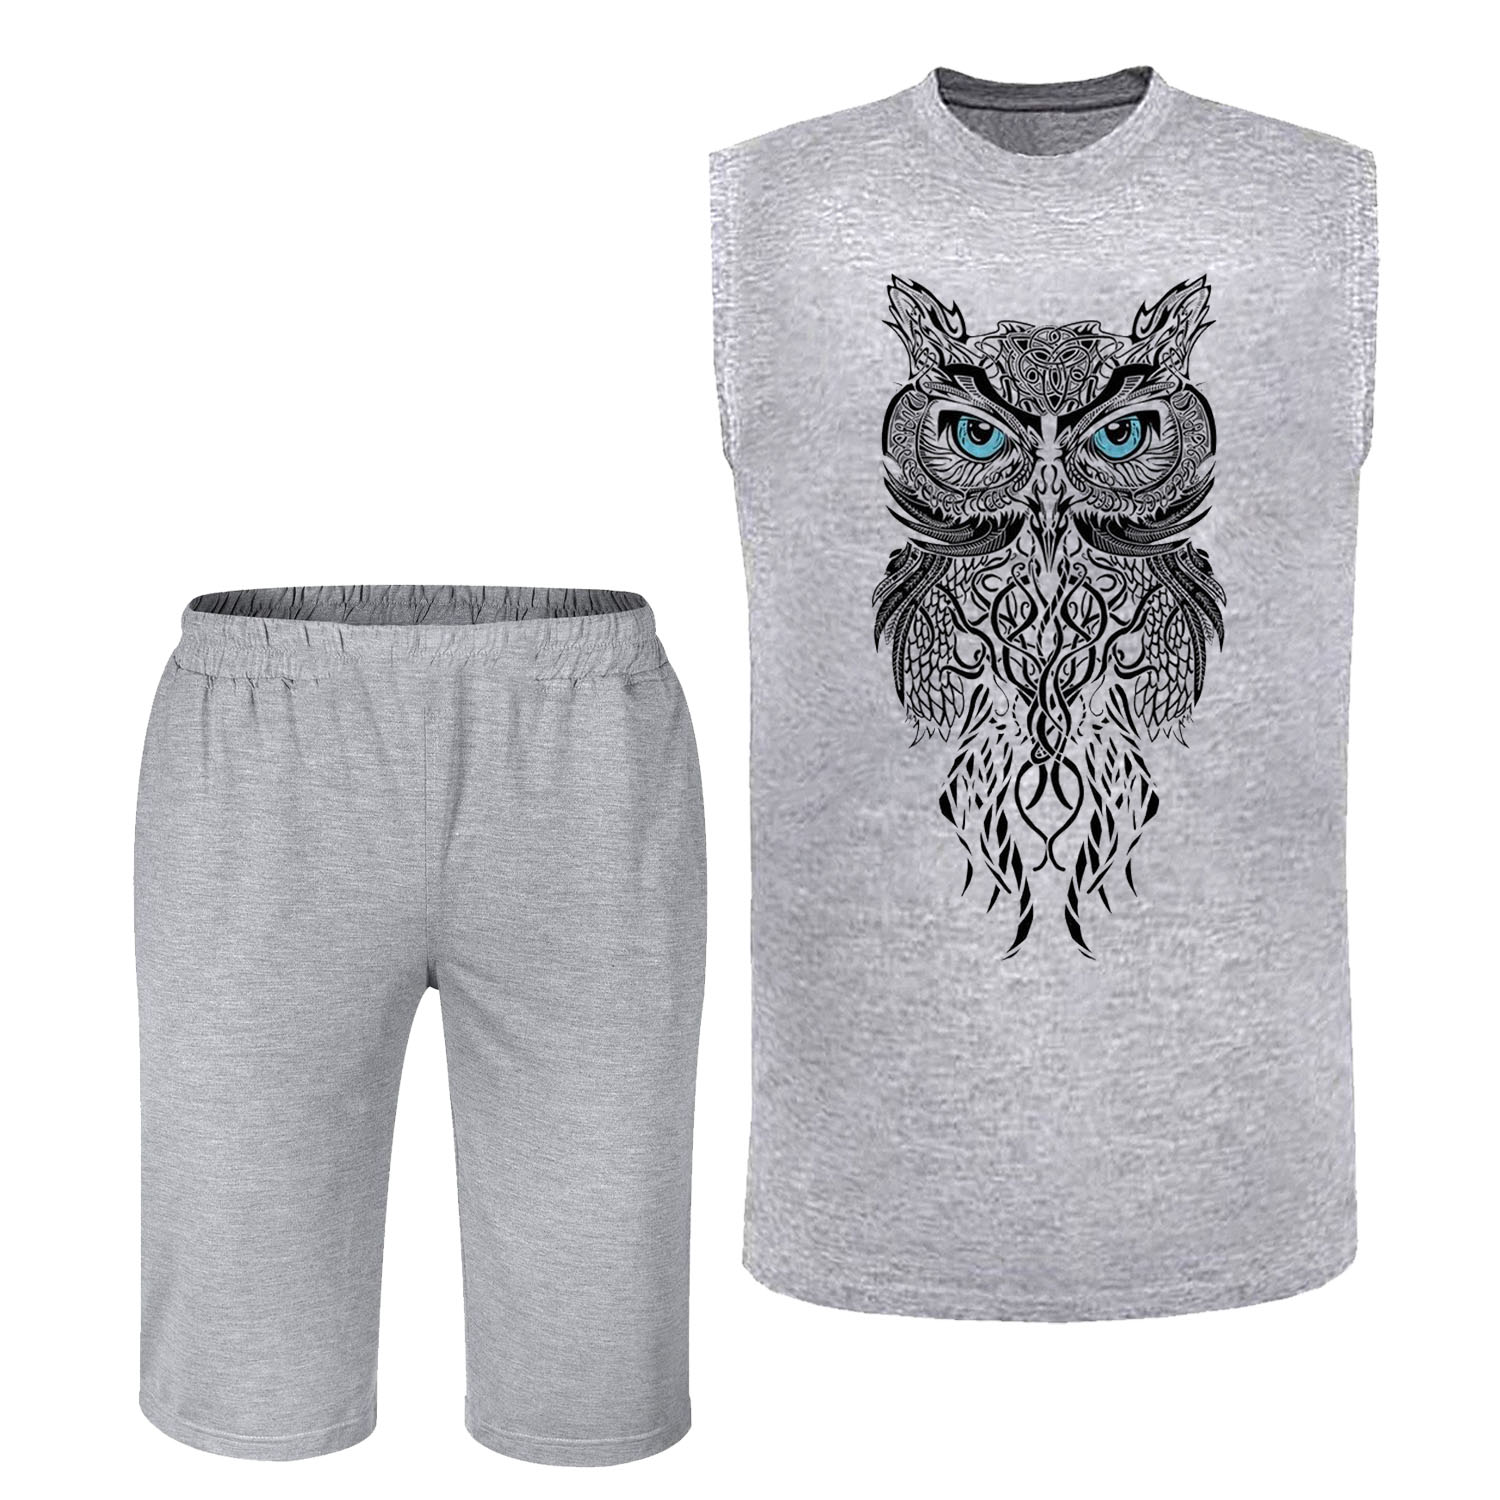 ست تاپ و شلوارک مردانه مدل OWL کد TJA17